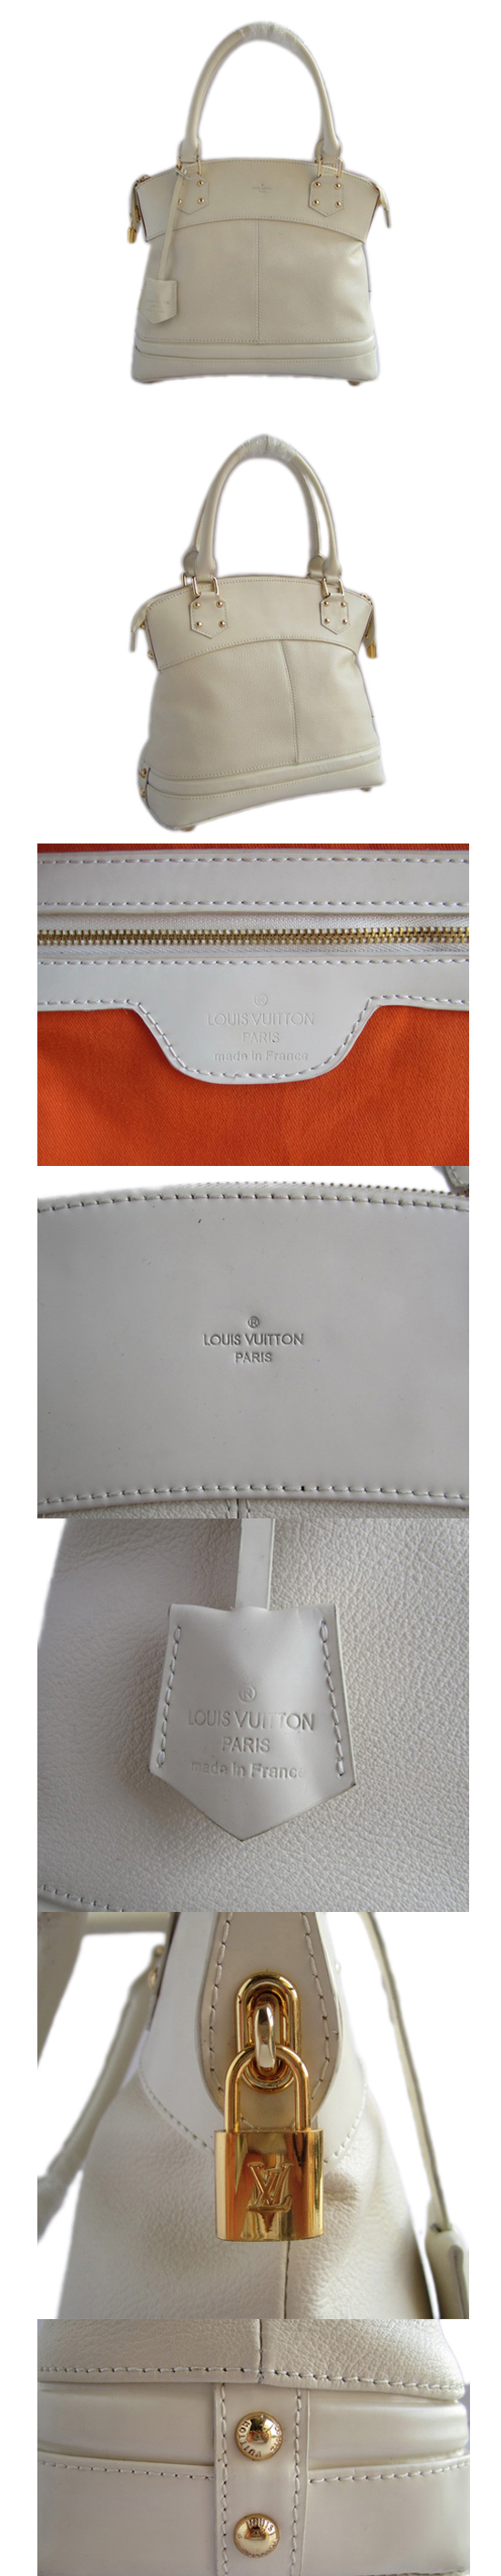 ブランド通販LOUIS VUITTON-ルイヴィトン-bag-M91876-off-white-xx激安屋-ブランドコピー